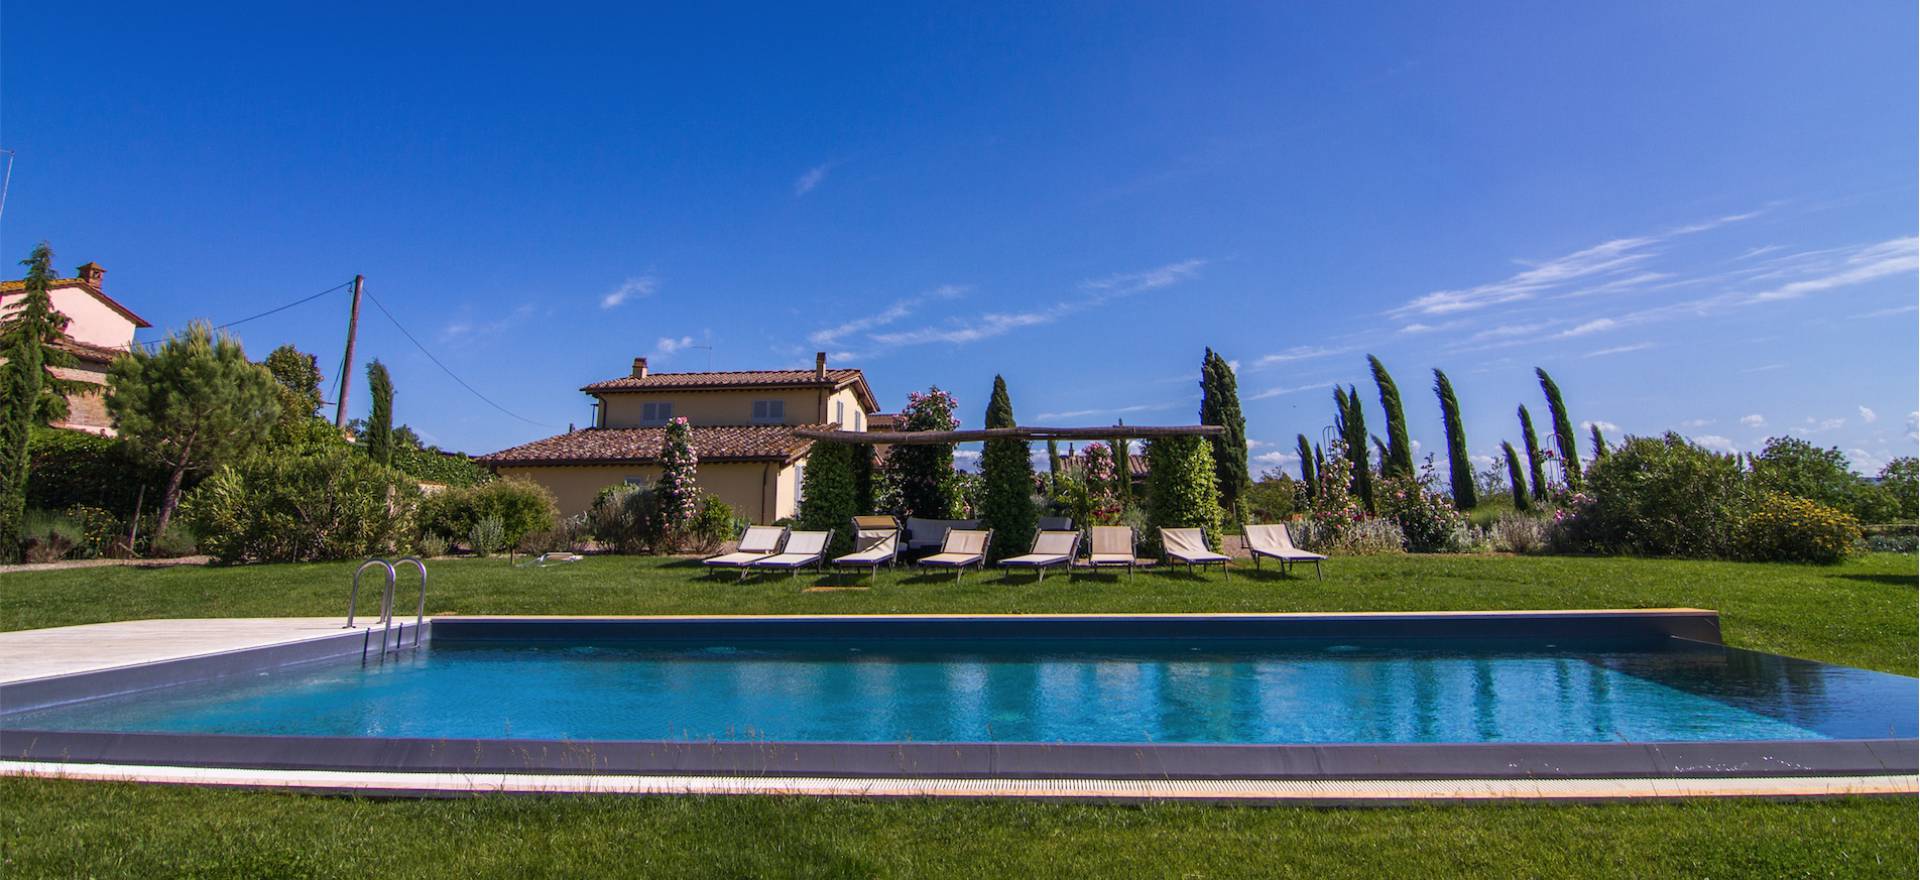 Agriturismo bij Siena met zwembad en luxe appartementen